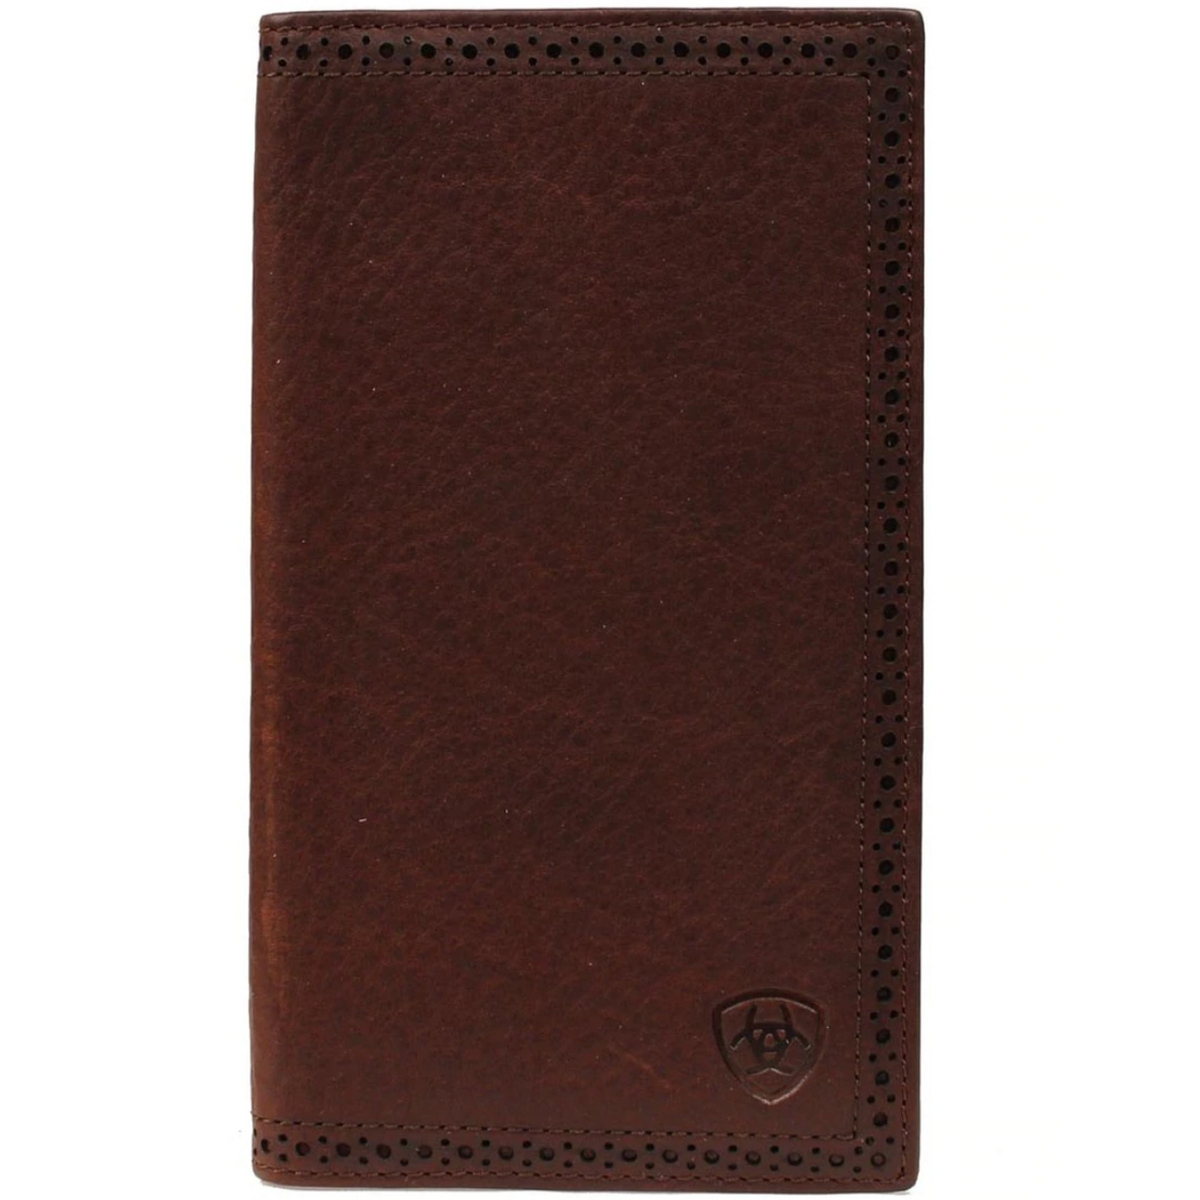 Ariat Men's Solid Brown Rodeo Wallet